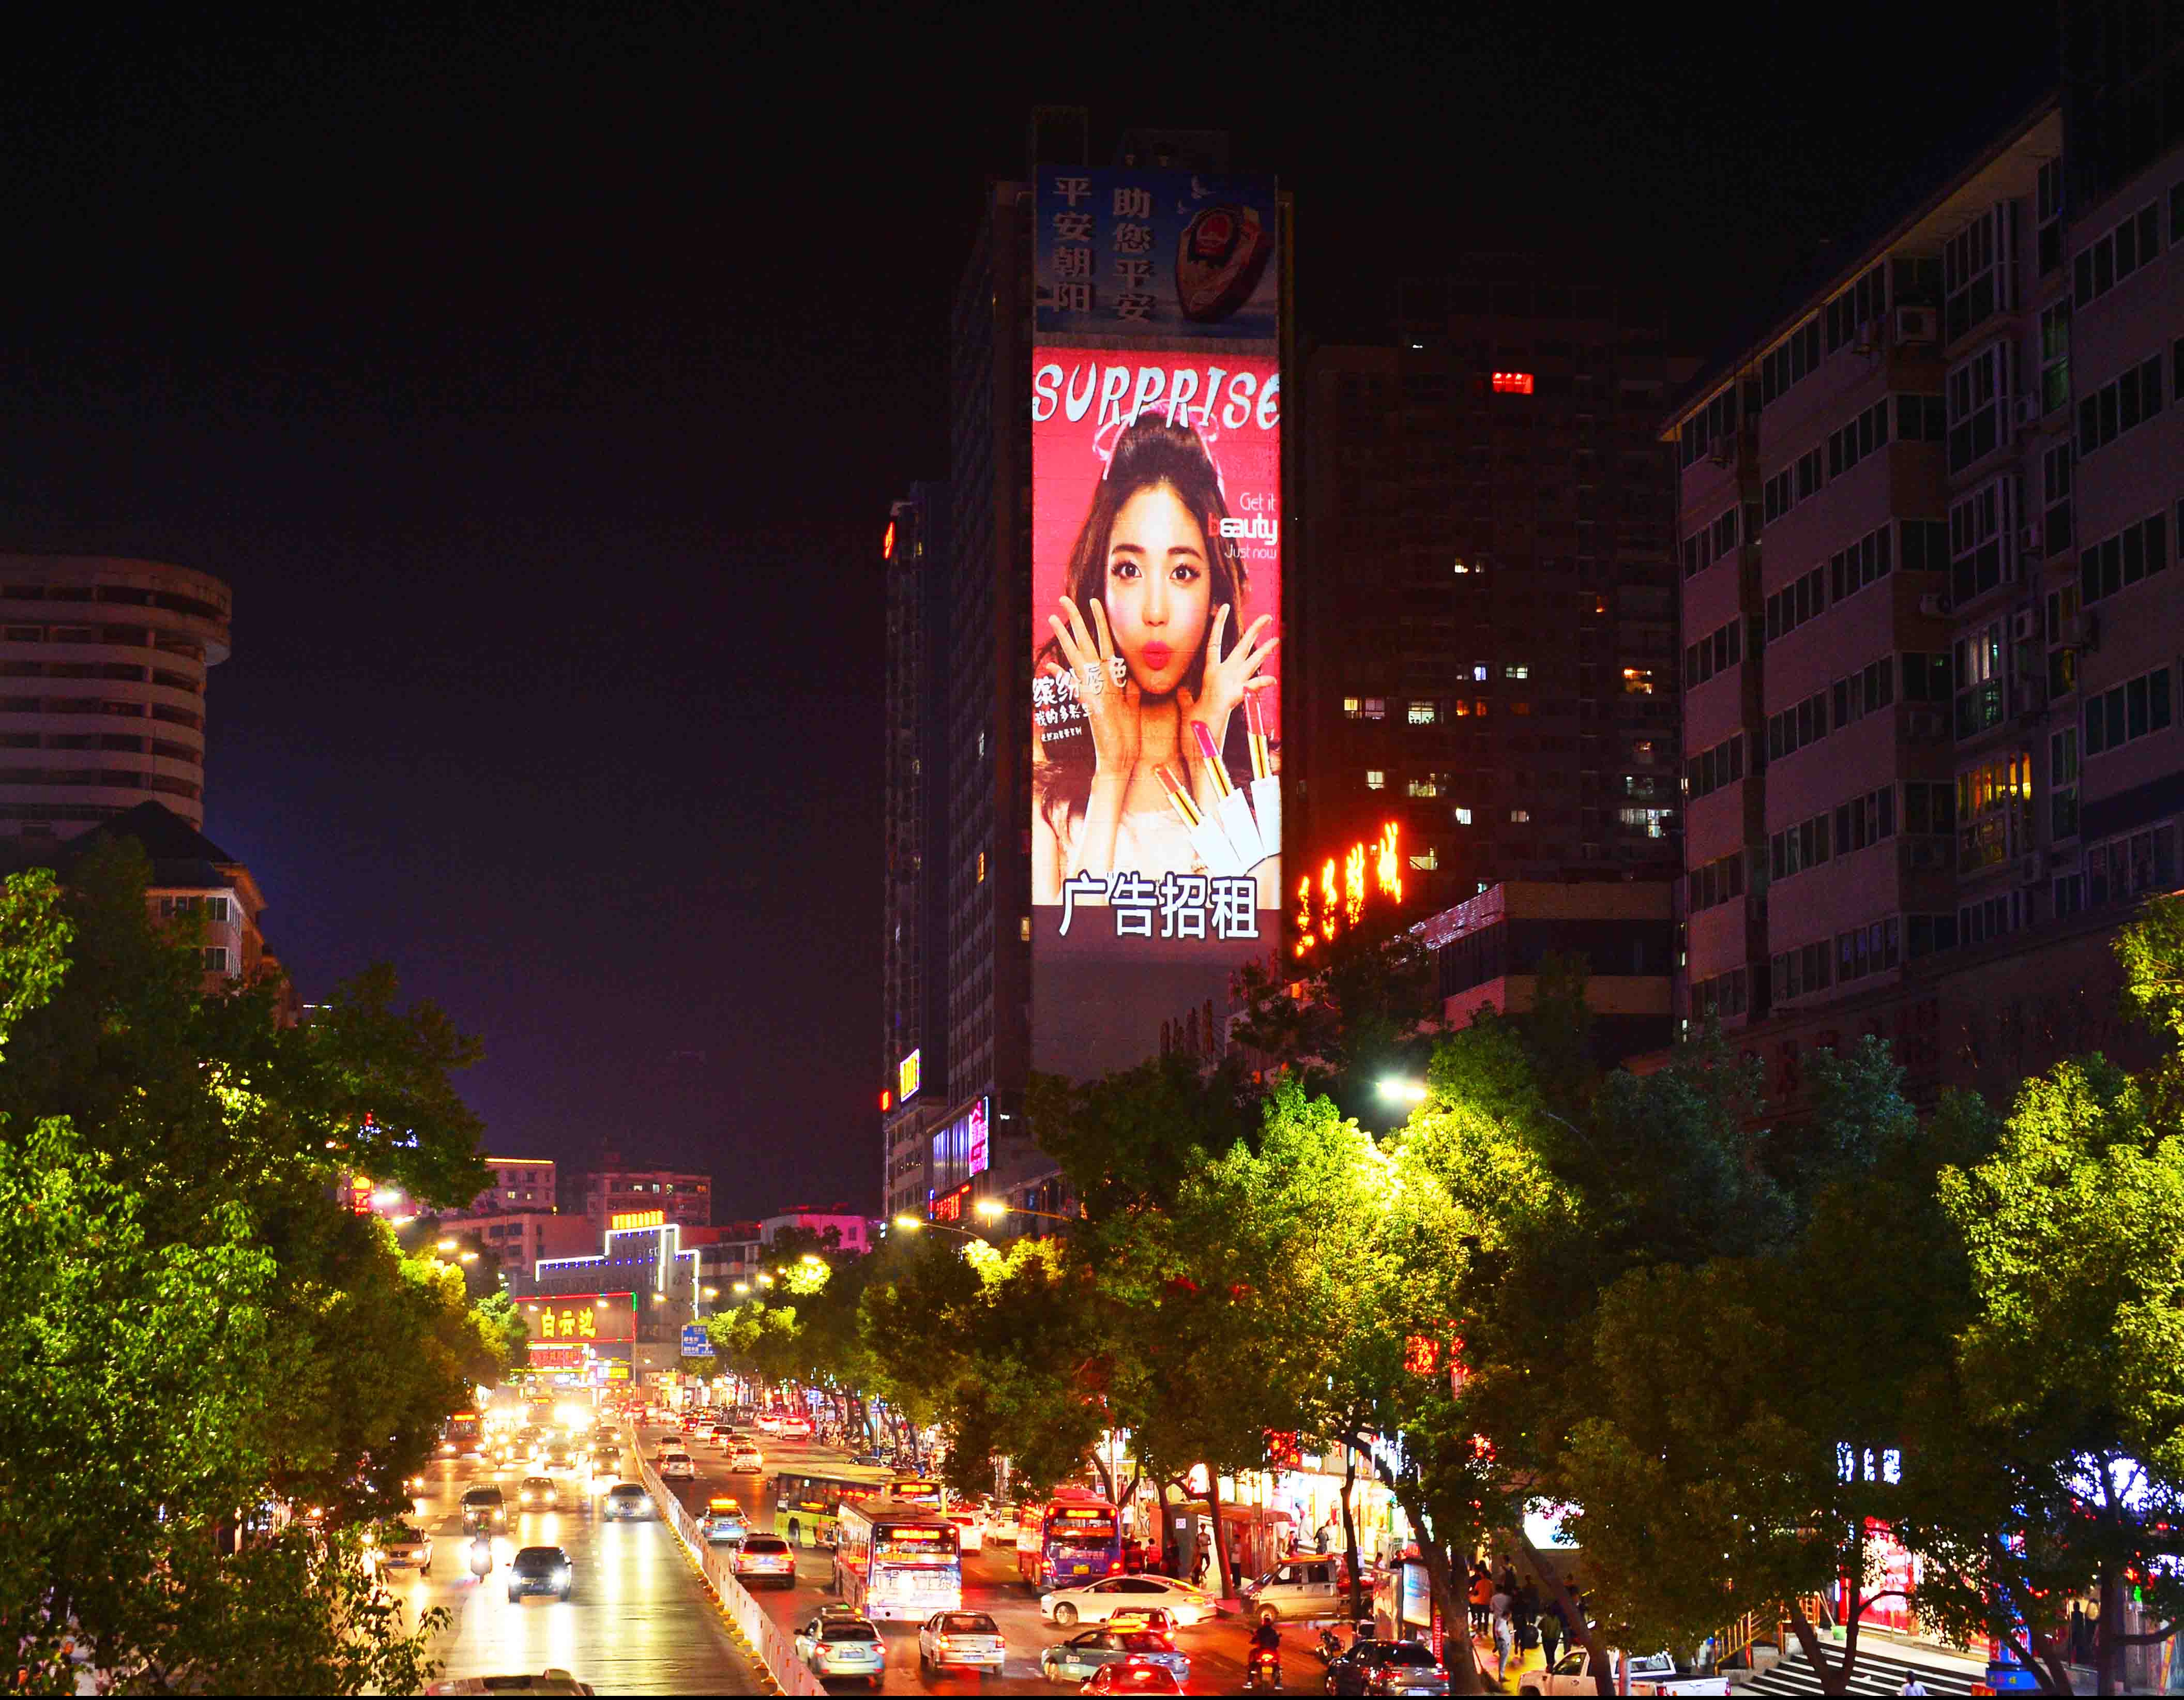 深圳都市巨影_W155投影广告_室外投影广告设备_专业工厂